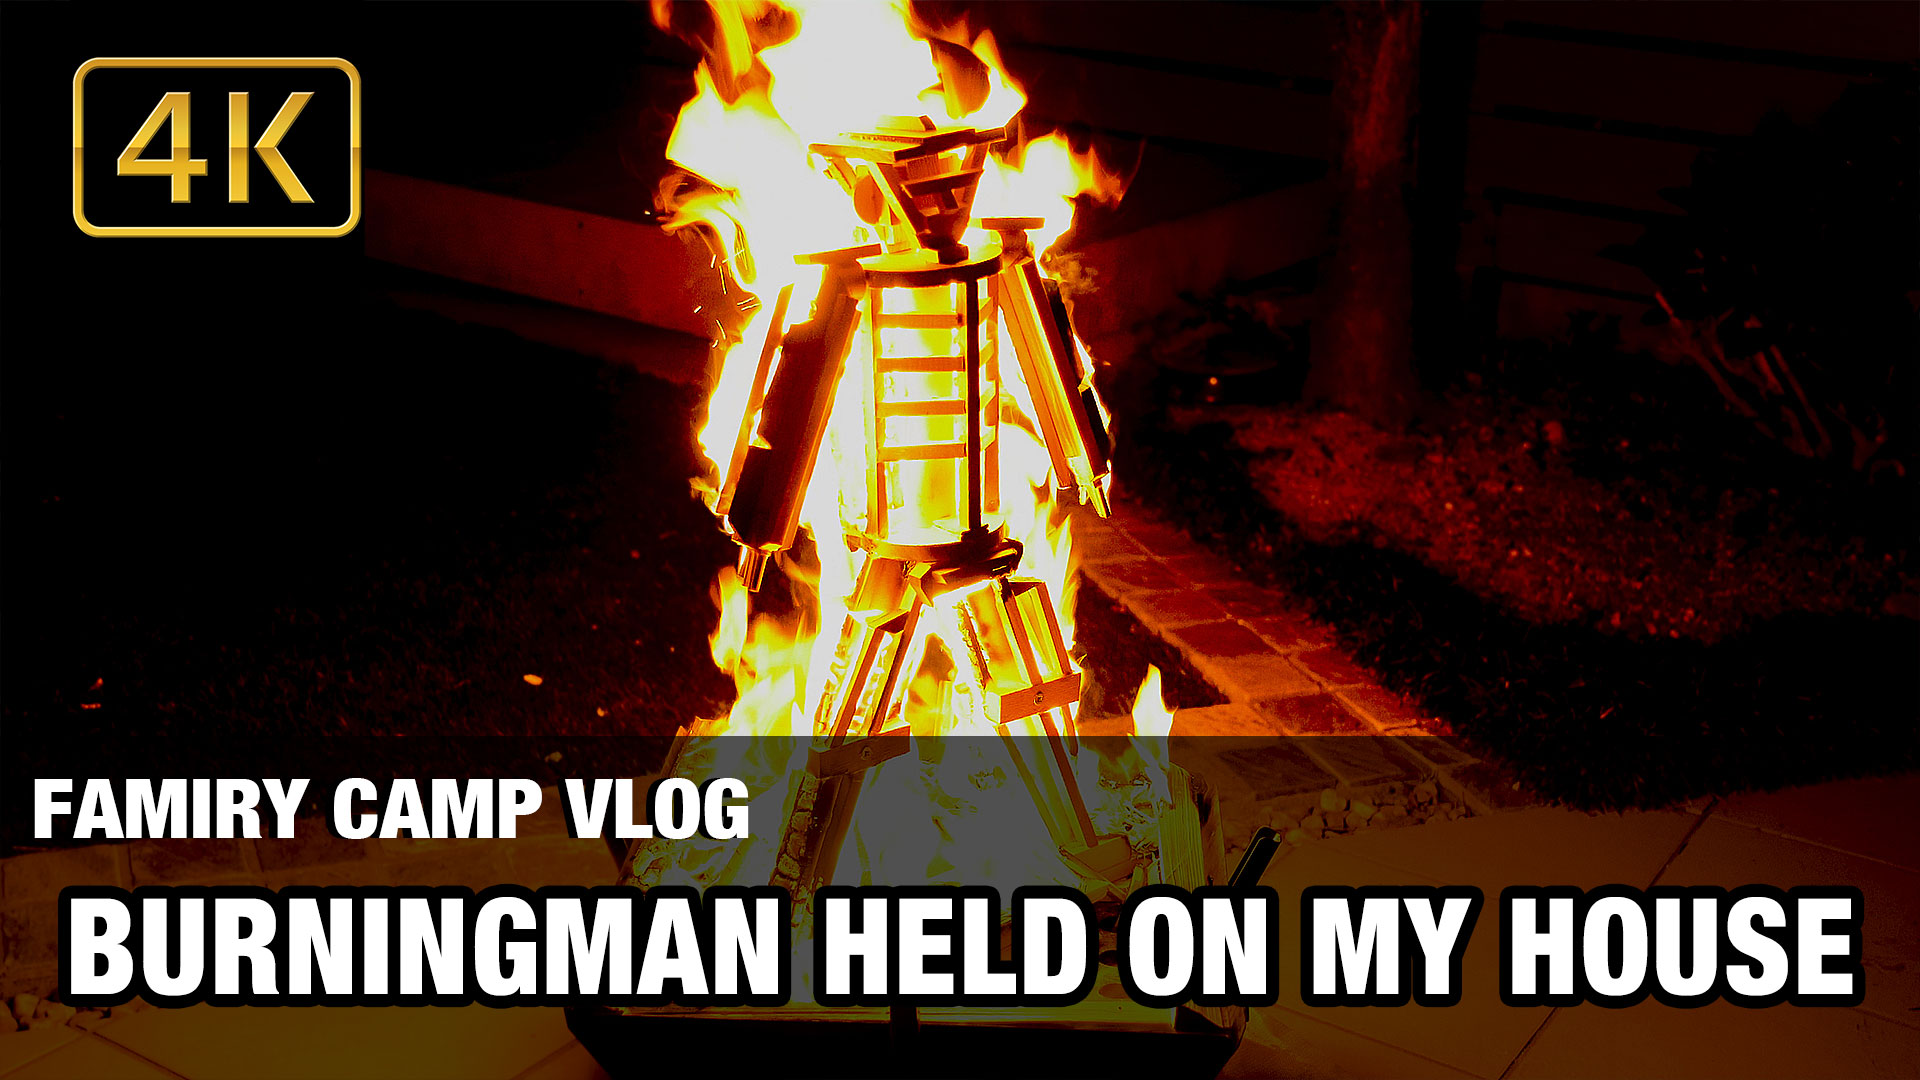 ニコナムtv Burning Man お庭でバーニングマン ザ マン を燃やす 焚き火 T Co Mx1tp2iknm Burningman バーニングマン 焚き火 庭遊び T Co Rn5dhxwdil Twitter